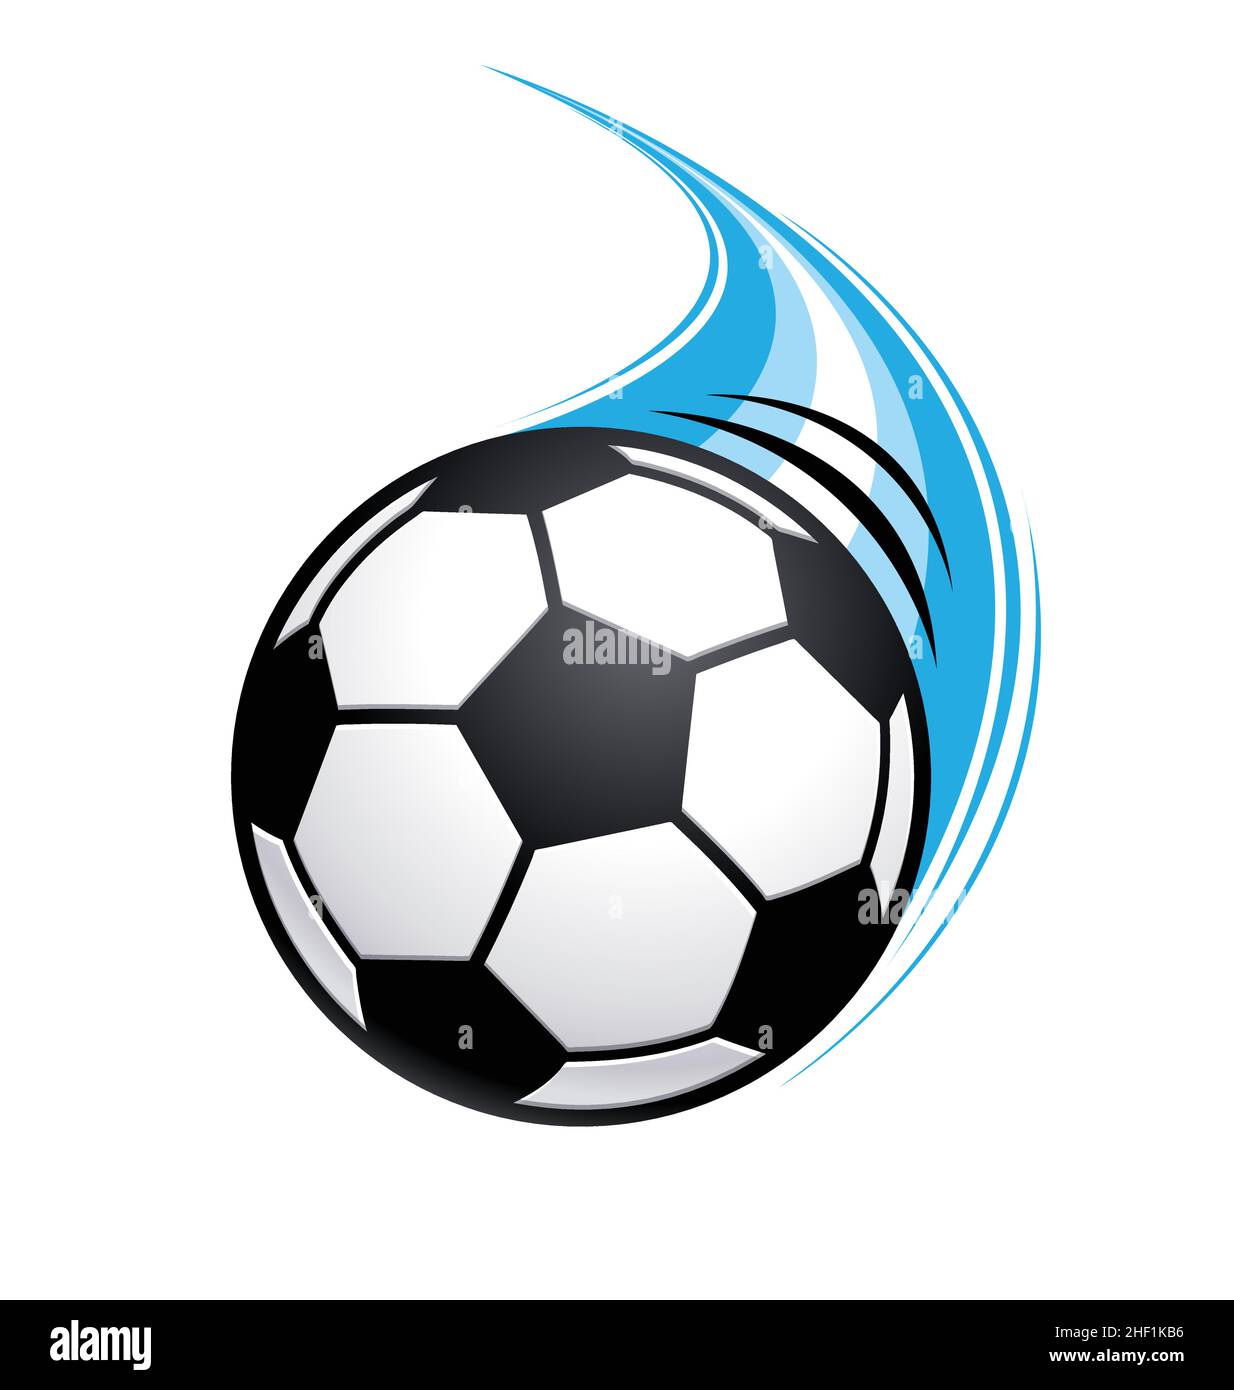 balón de fútbol volador de ritmo rápido en movimiento con raya azul aislada sobre fondo blanco Ilustración del Vector